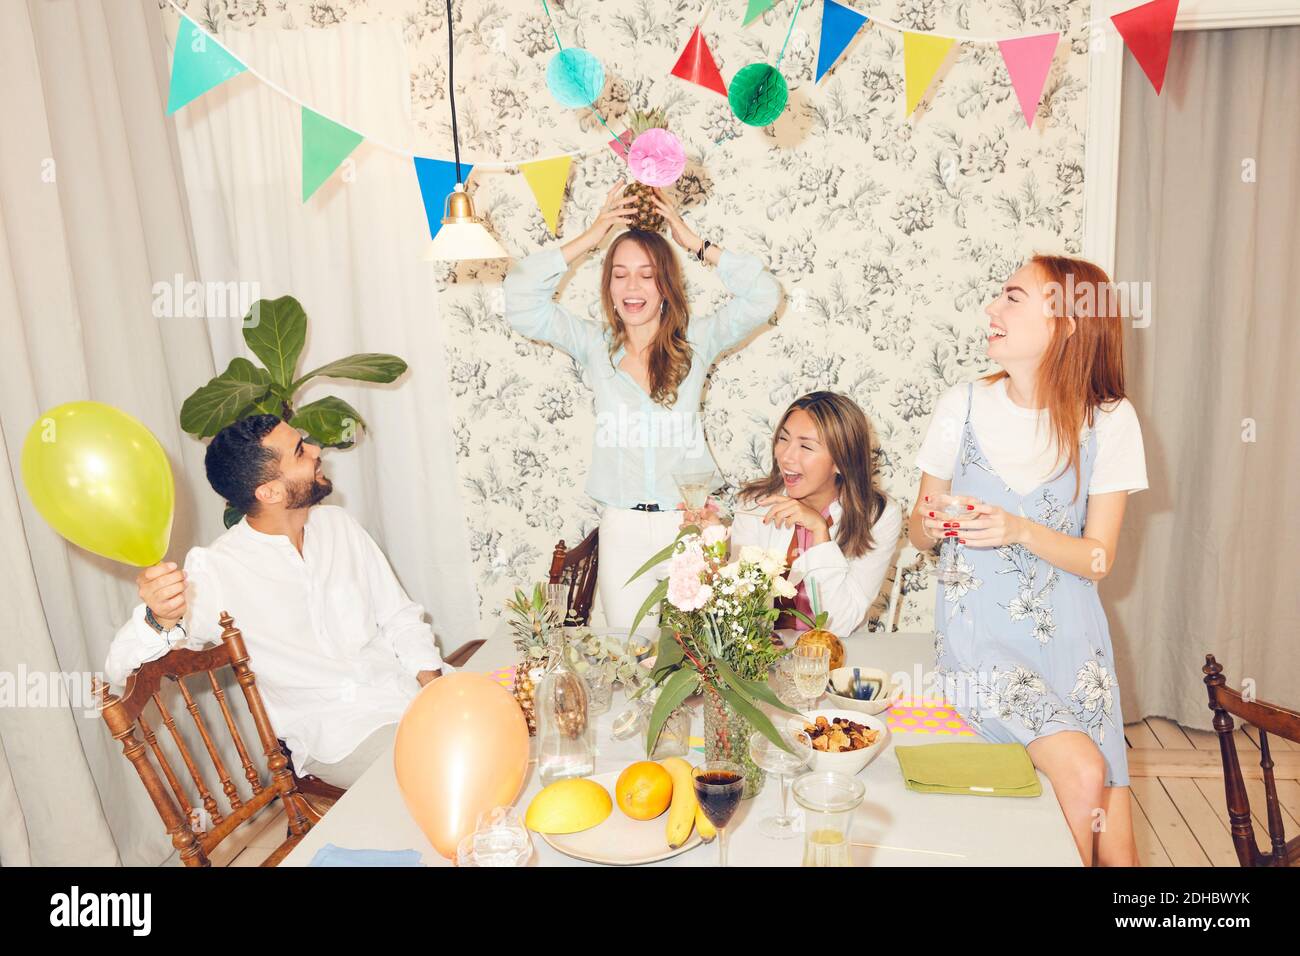 Junge unbeschwerte Freunde spielen mit Ananas beim Abendessen Party an Wohnung Stockfoto